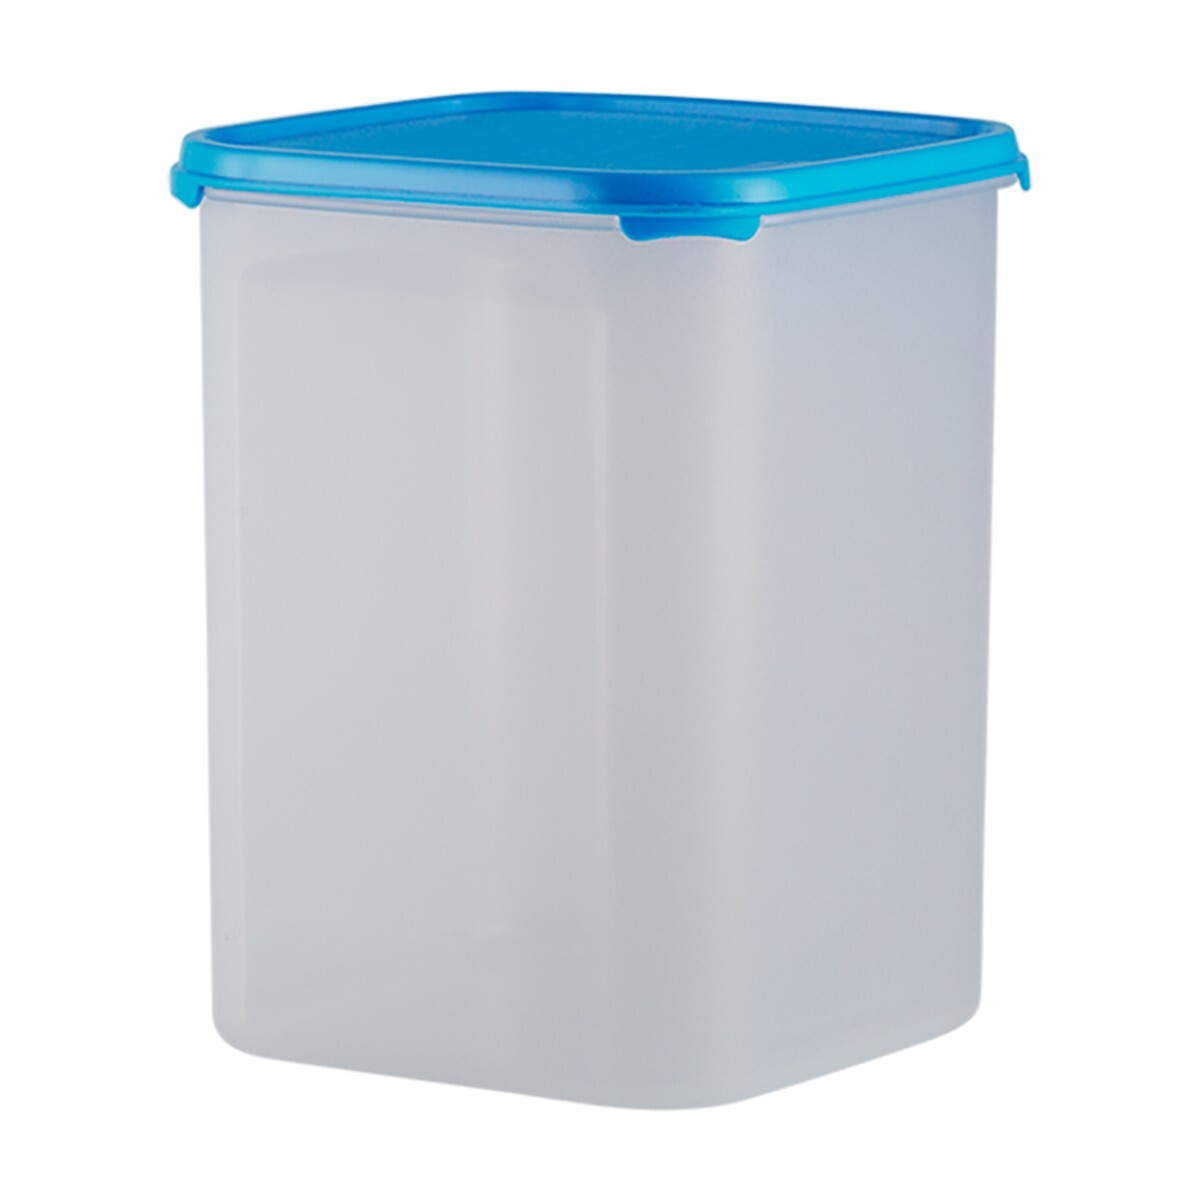 Polyset Container Magic Seal Square-5.5L